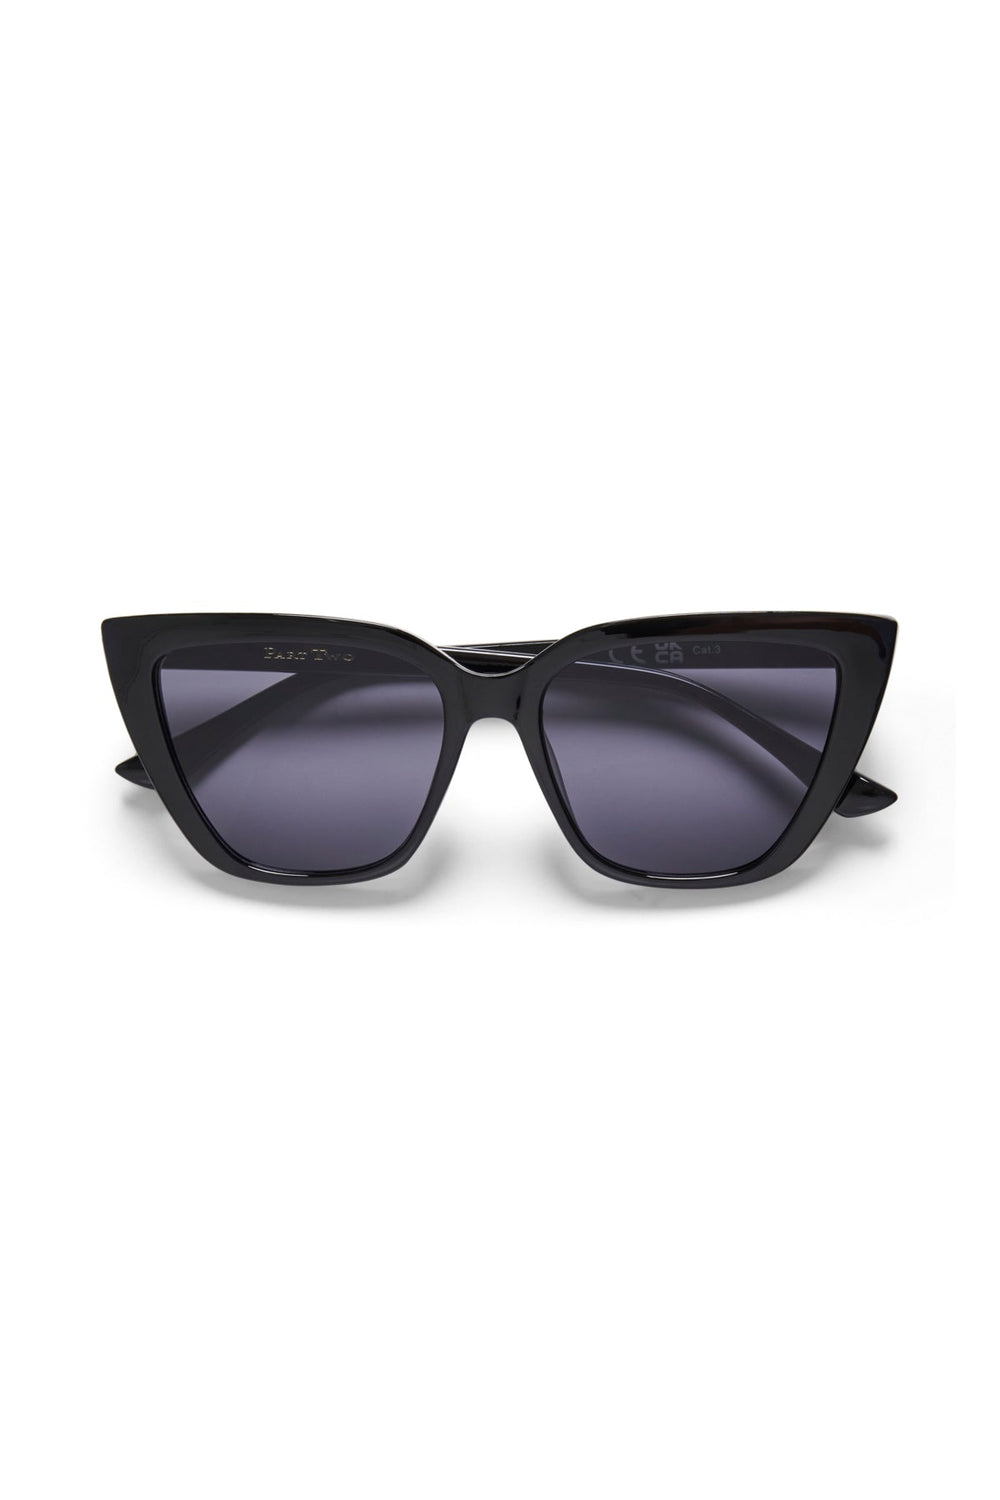 Emanpw Sunglasses Black | Accessories | Smuk - Dameklær på nett